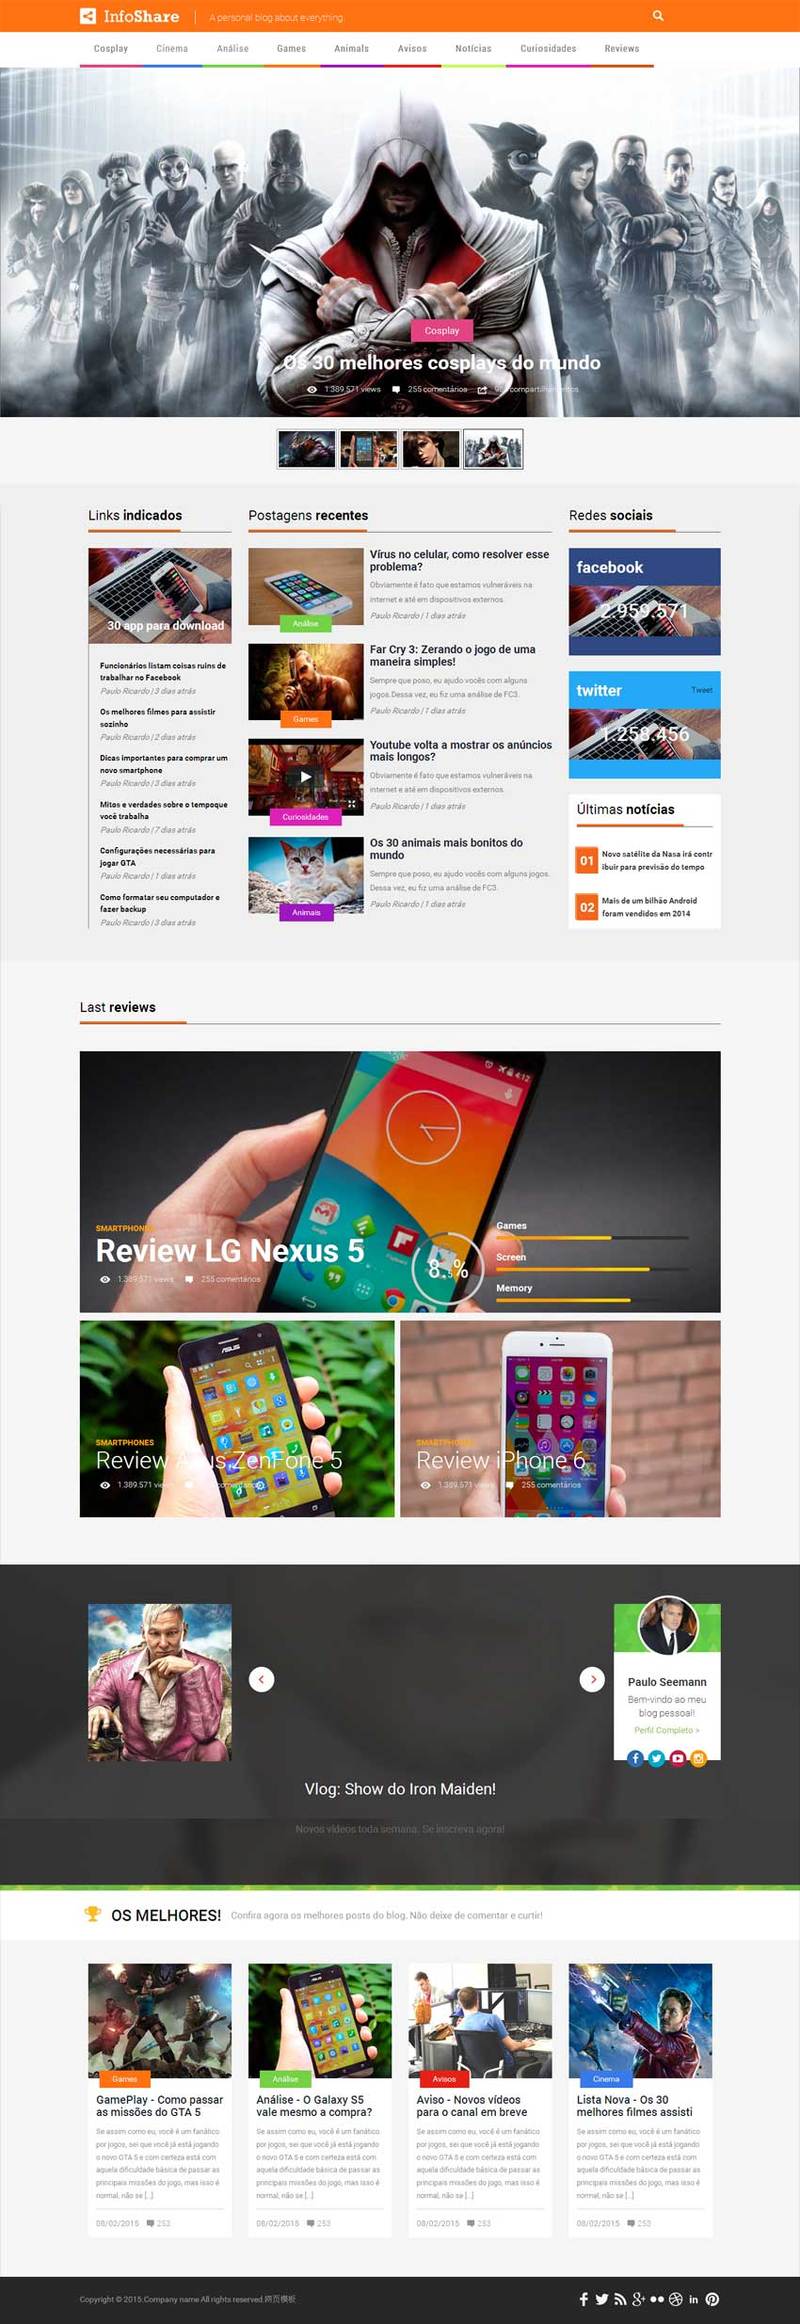 橙色风格的手机游戏网站模板下载